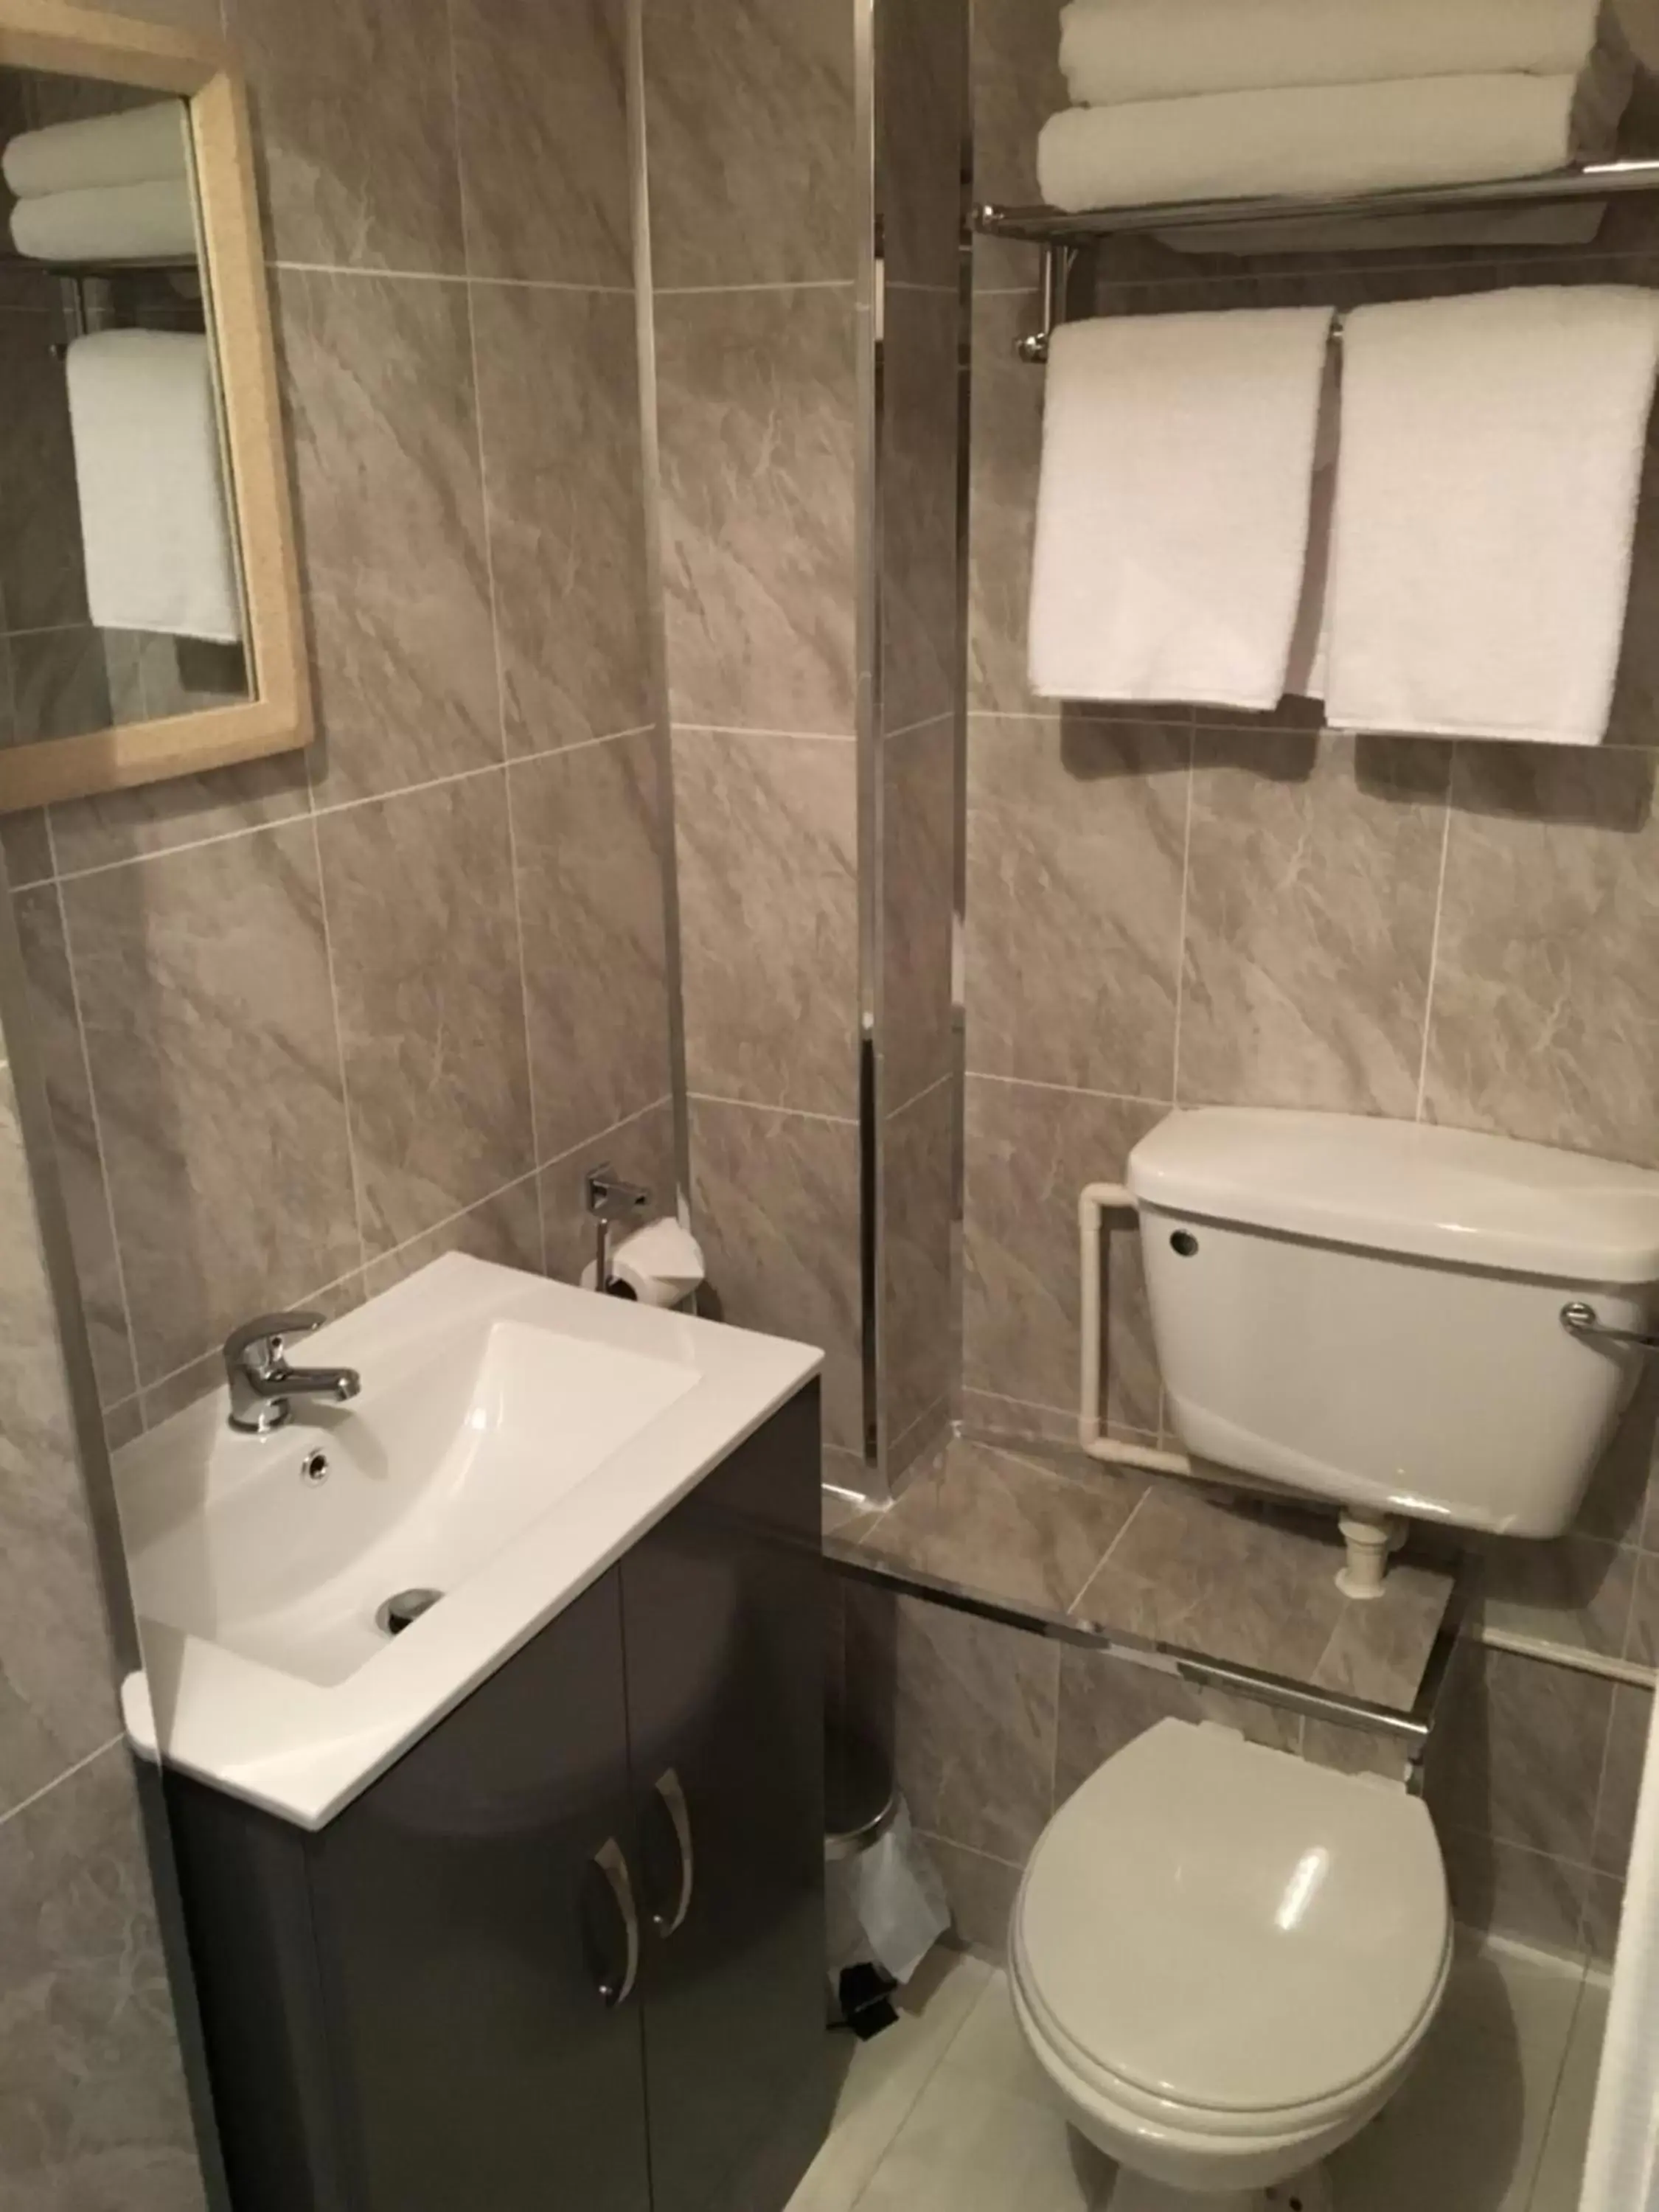 Bathroom in The Ynyscedwyn Arms Hotel